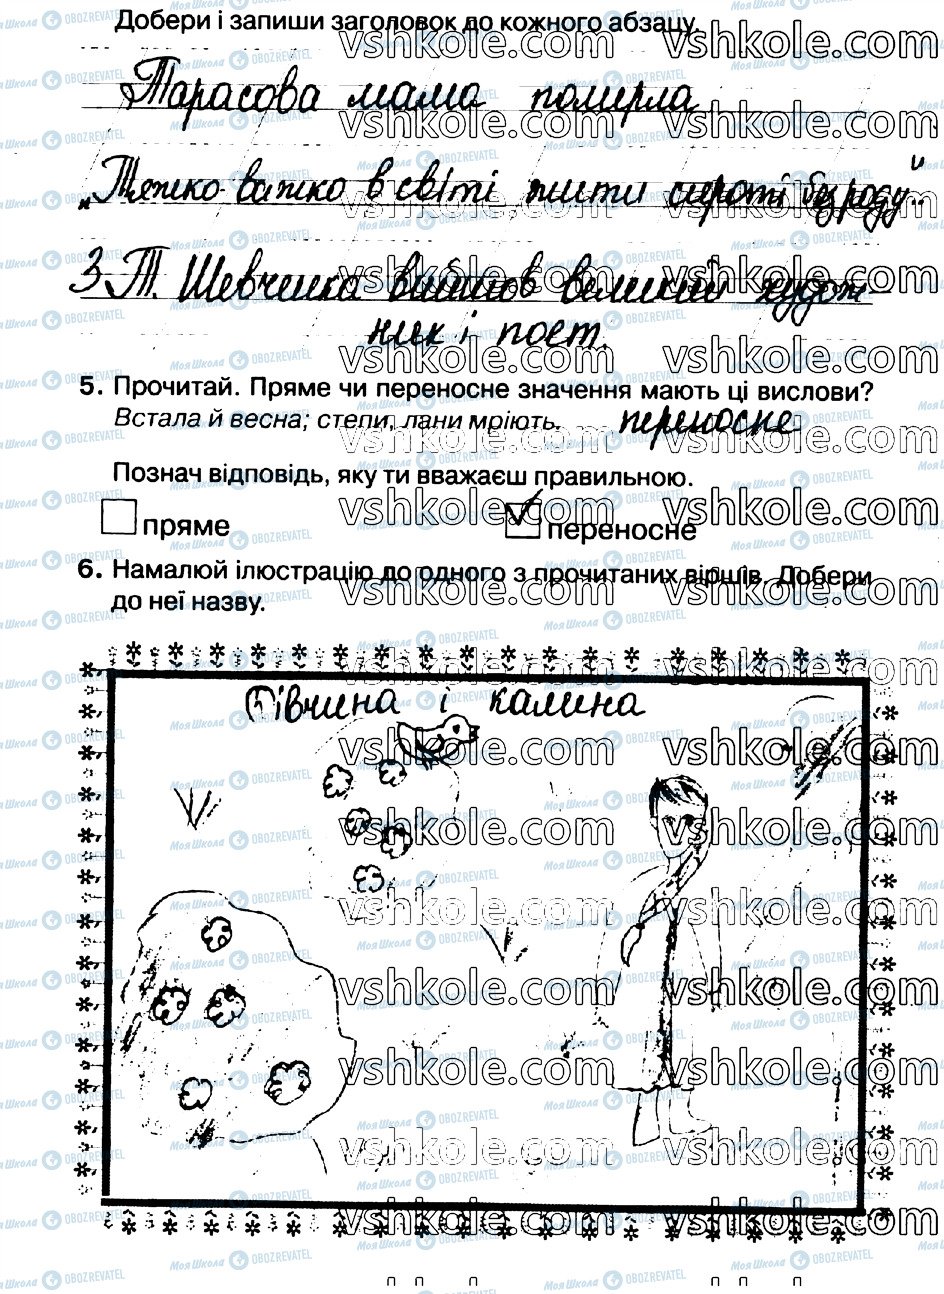 ГДЗ Українська мова 2 клас сторінка стр66